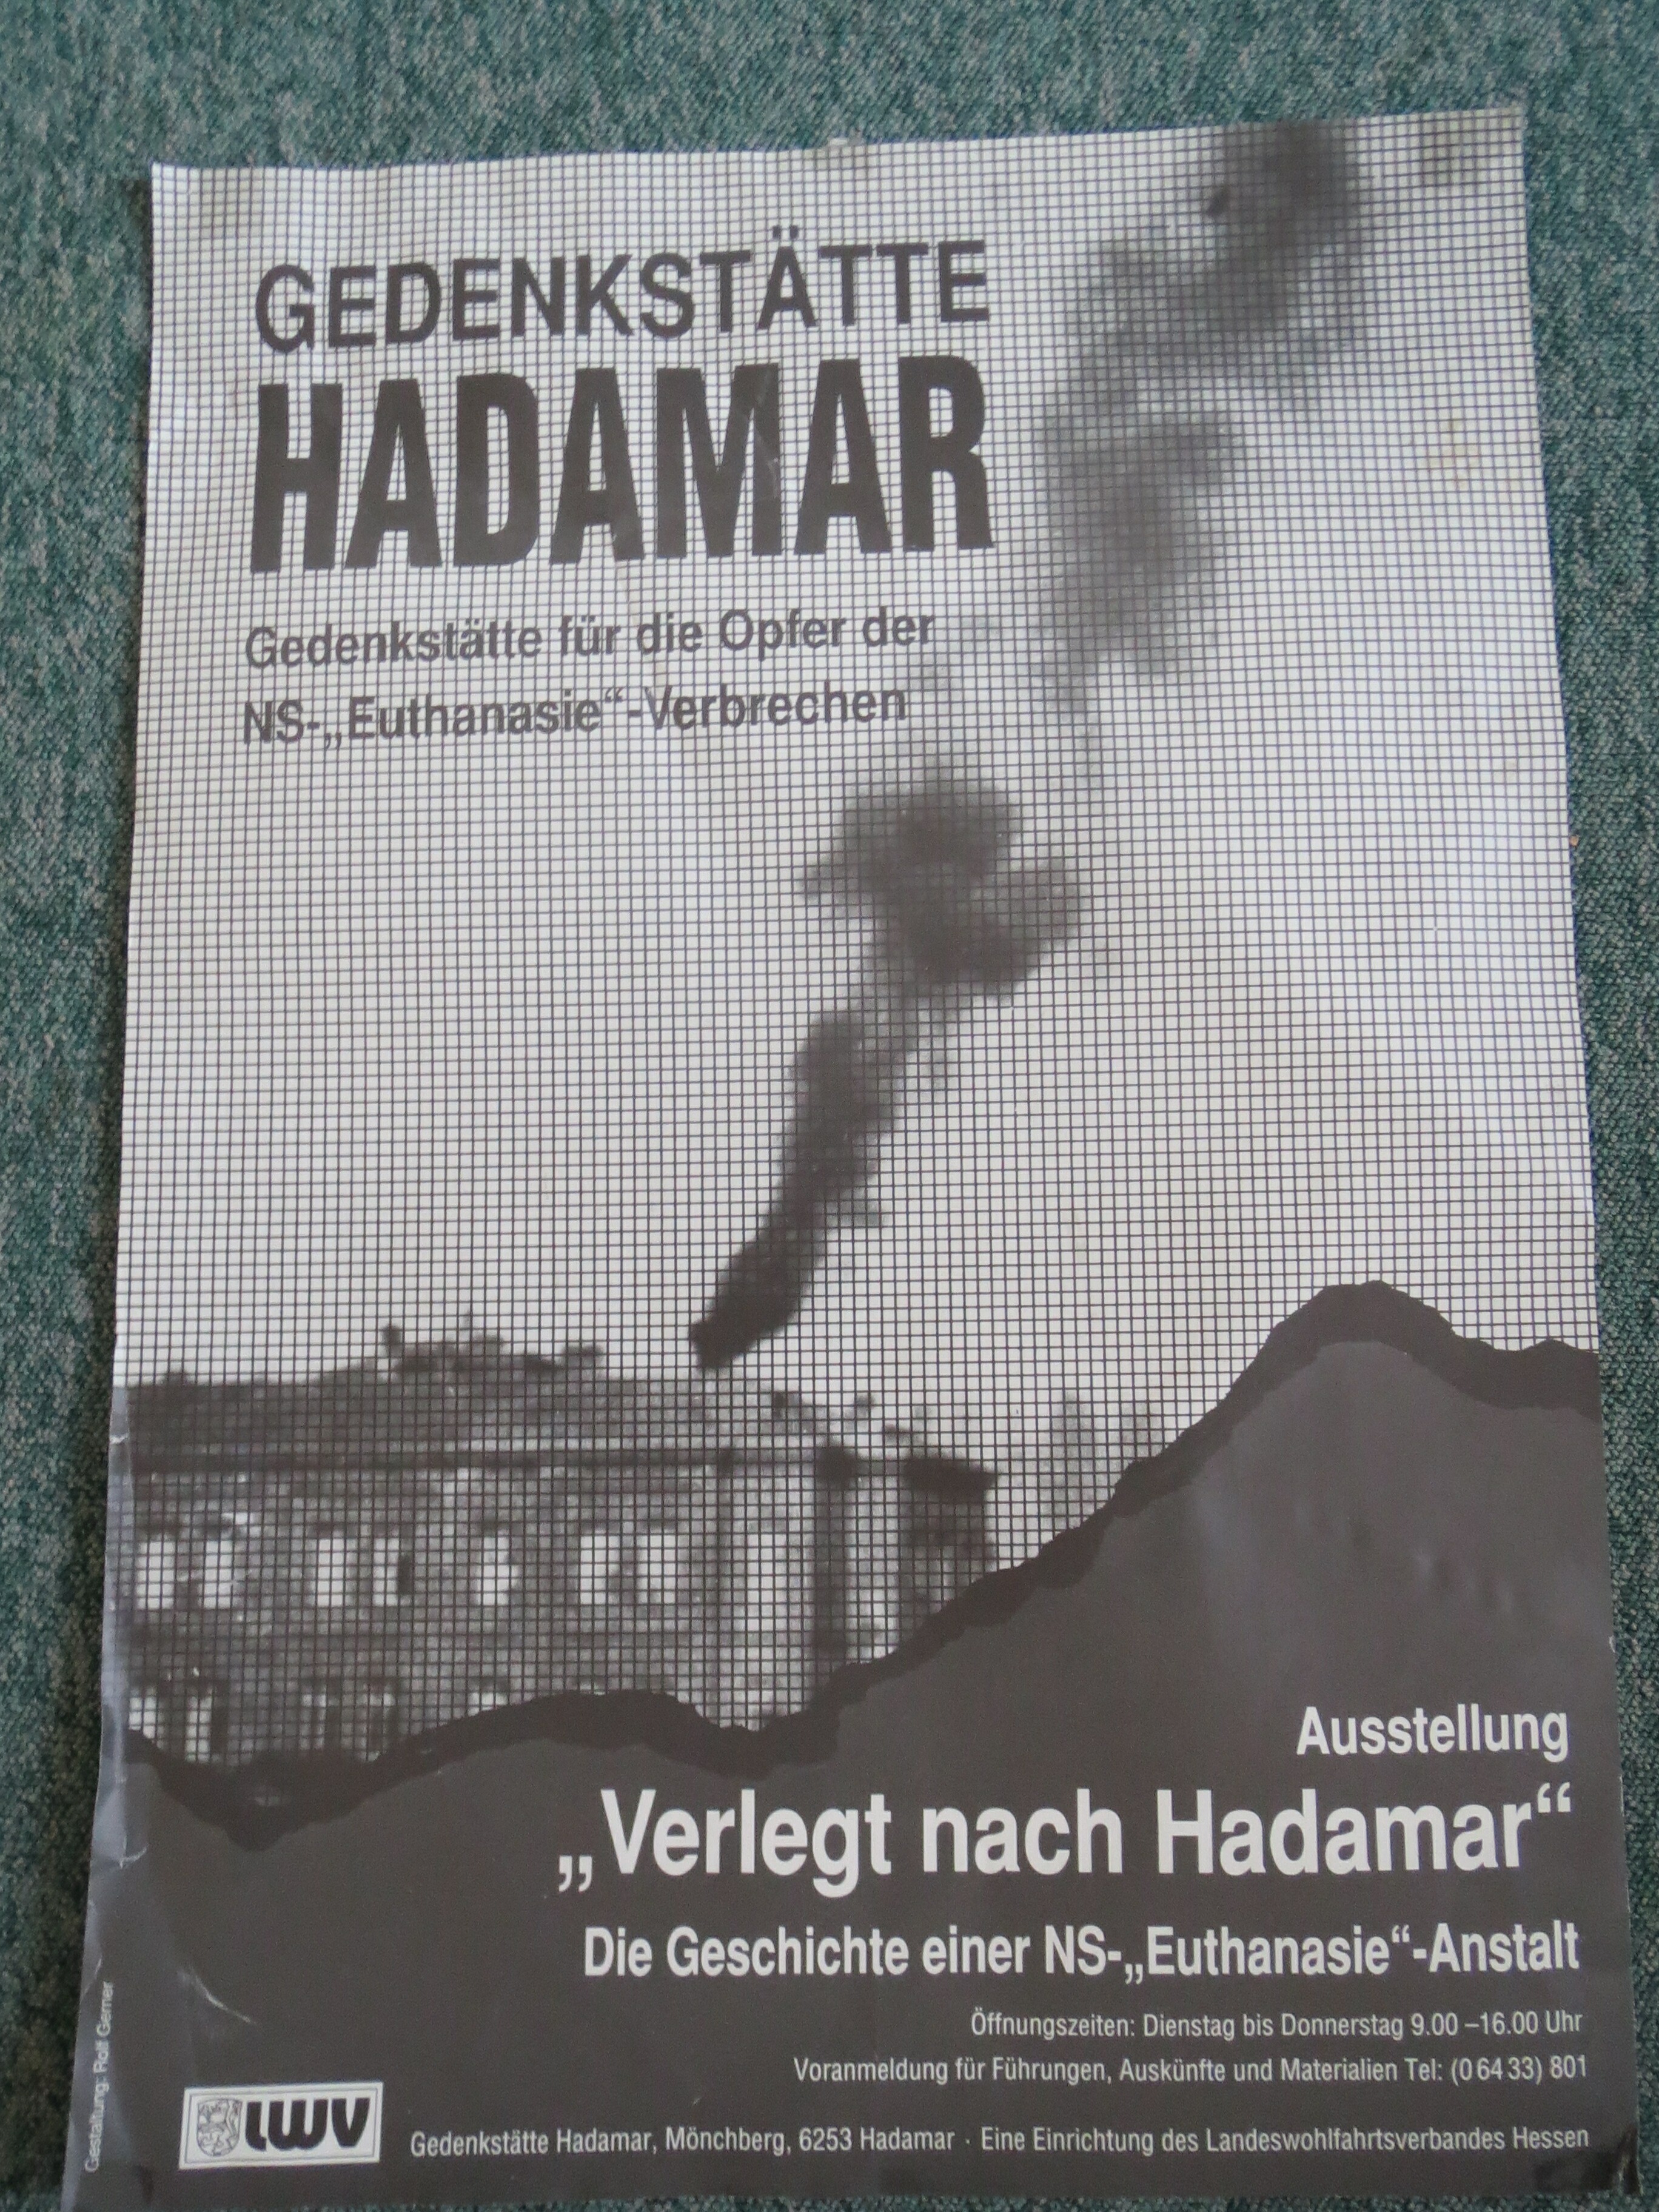 Plakat Ausstellung Gedenkstätte Hadamar (Gedenkstätte Hadamar RR-R)